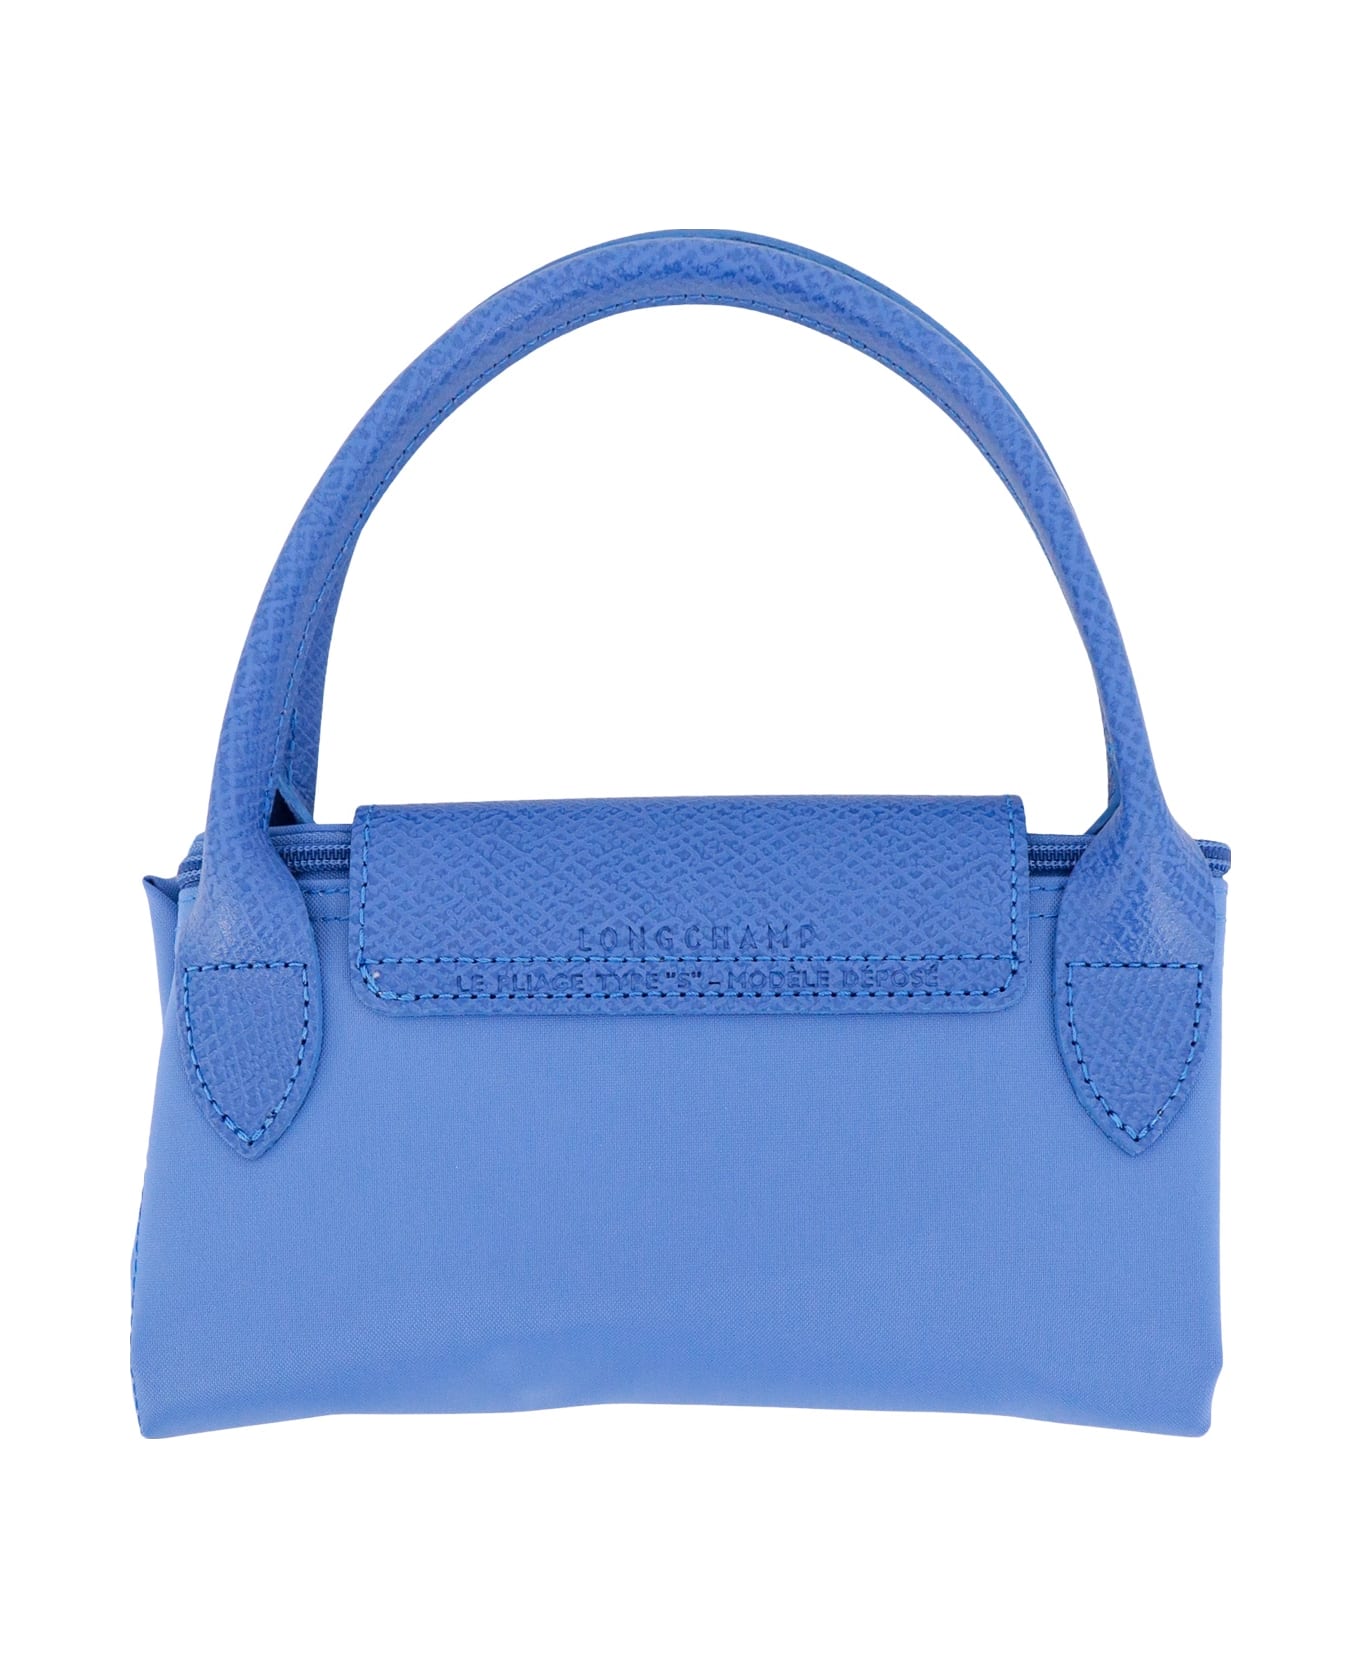 Longchamp Le Pliage Handbag - bleuet トートバッグ